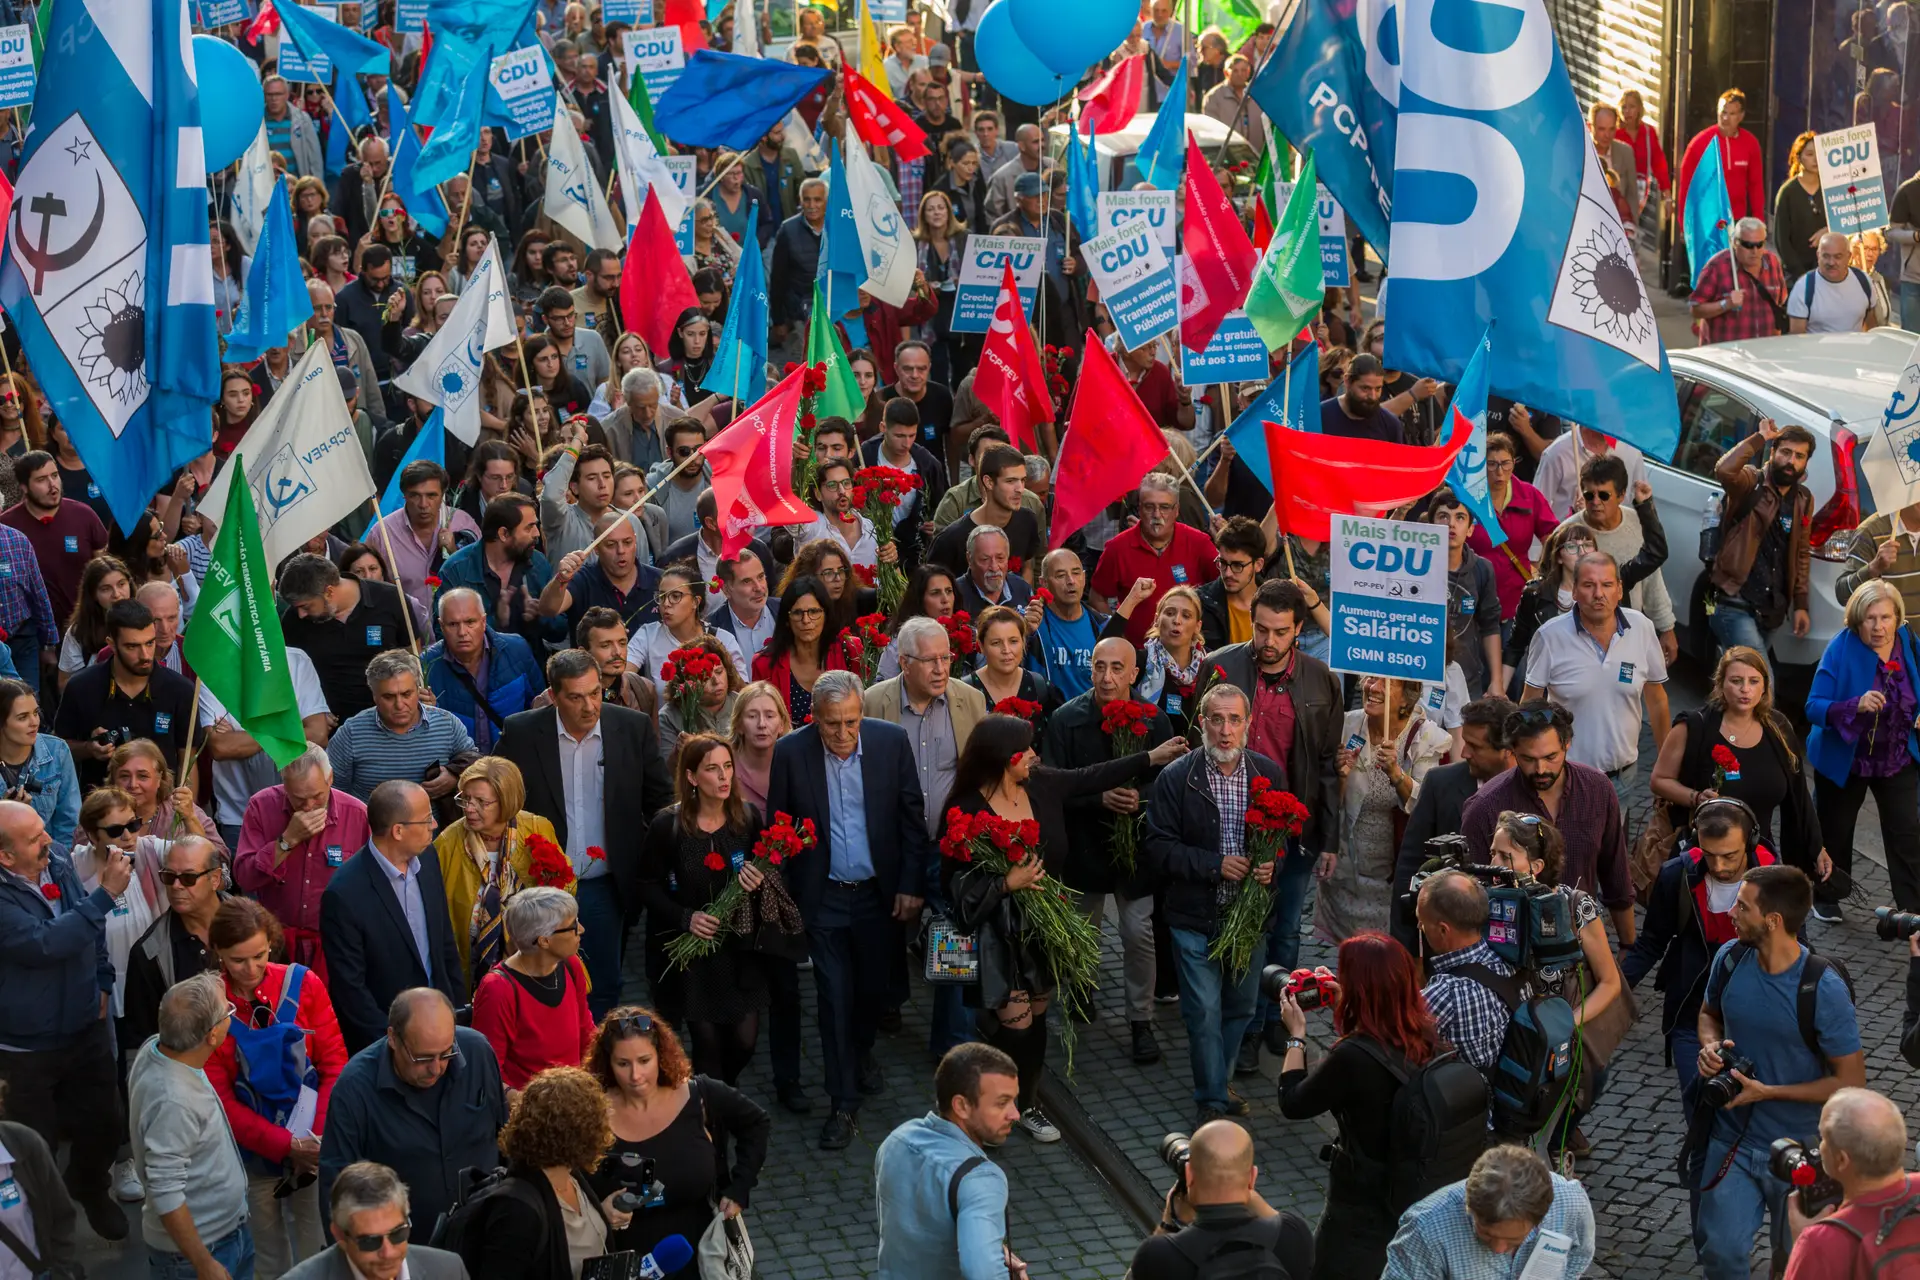 Arruada, no Porto, na campanha eleitoral das Legislativas de 2019